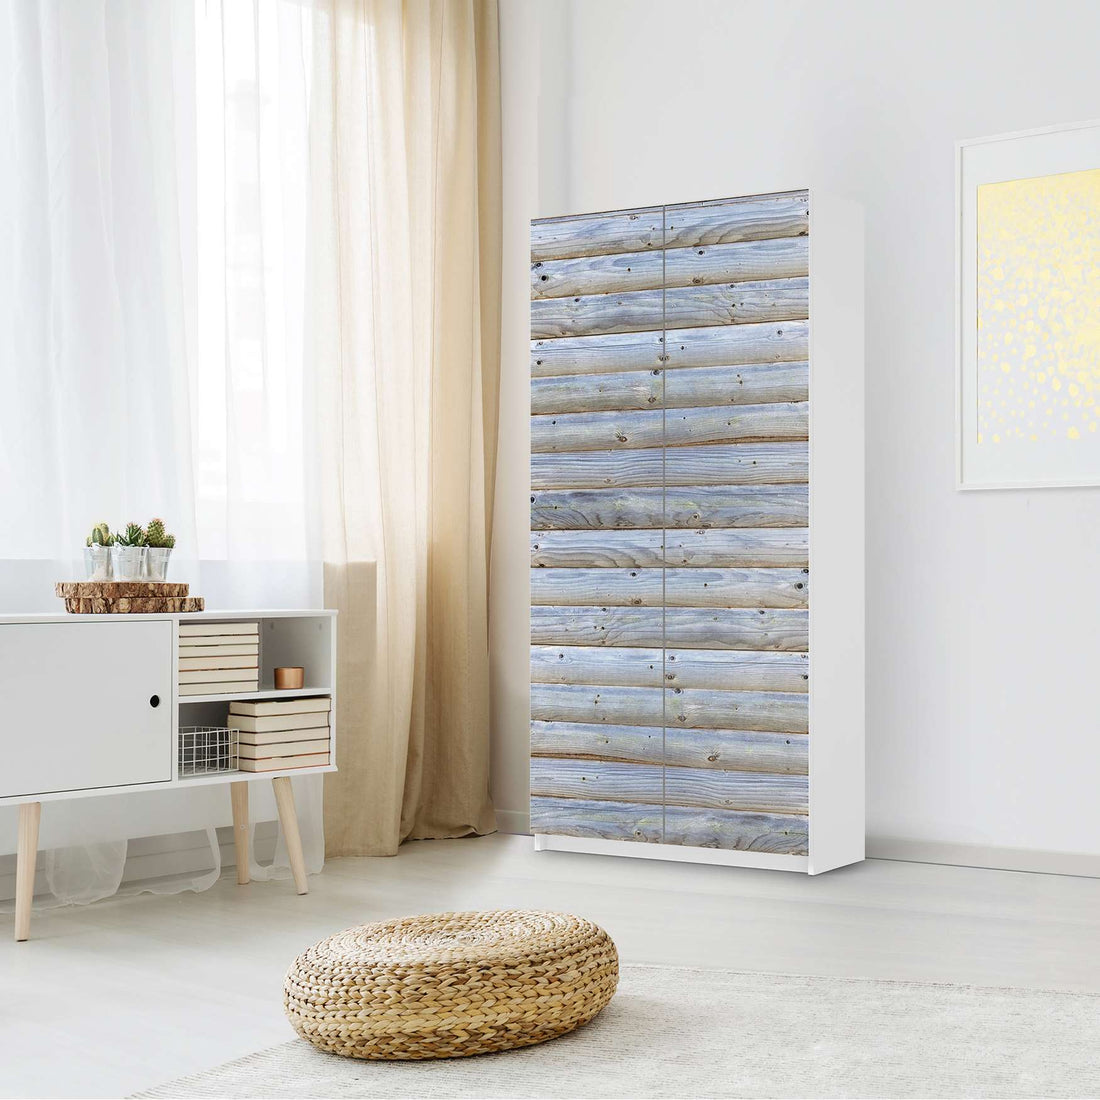 Klebefolie für Möbel Greyhound - IKEA Pax Schrank 201 cm Höhe - 2 Türen - Schlafzimmer